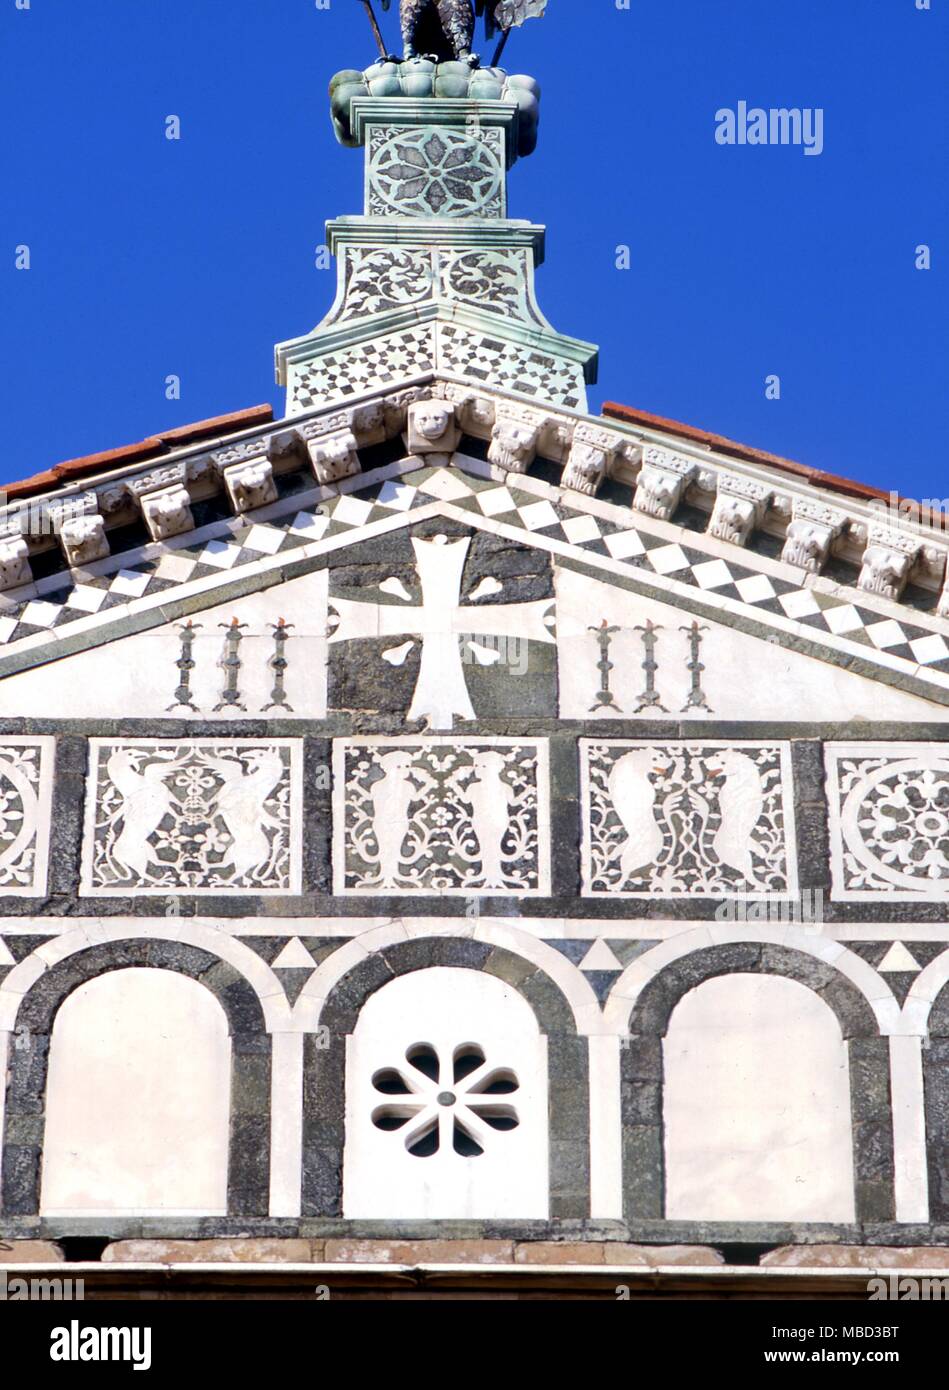 Symbole - Kreuz. Das Kreuz auf die Kirche von San Miniato al Monte in Florenz, 1207. Die vier weiße Spritzer in der Nähe des Zentrums, die Wunden der Kreuzigung Christi symbolisieren. Stockfoto